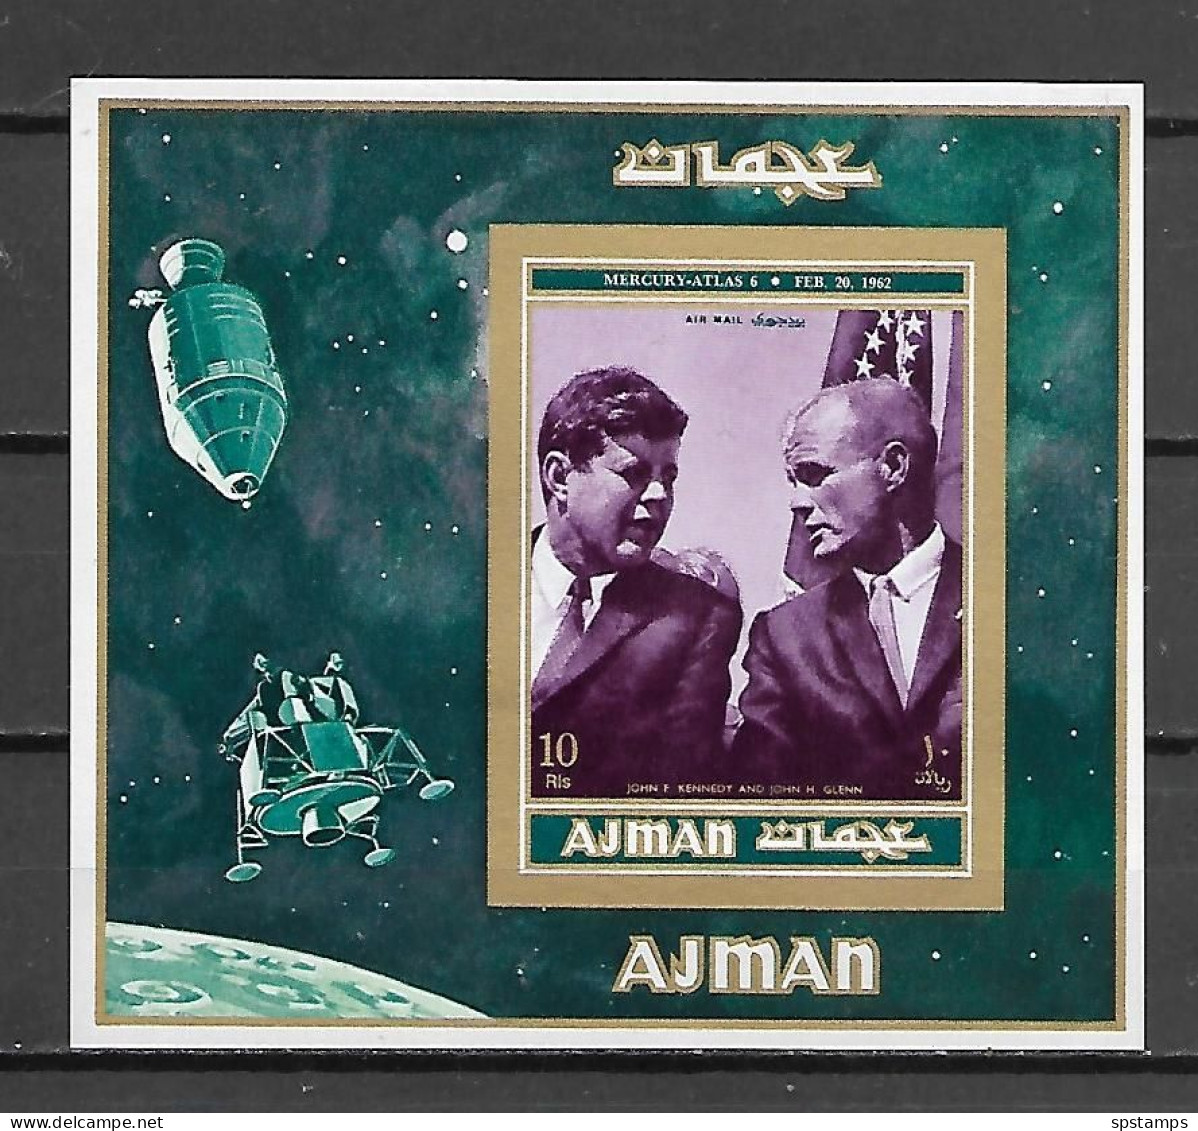 Ajman 1971 Space - Atronauts - Apollo Lunar Missions MS MNH - Asien